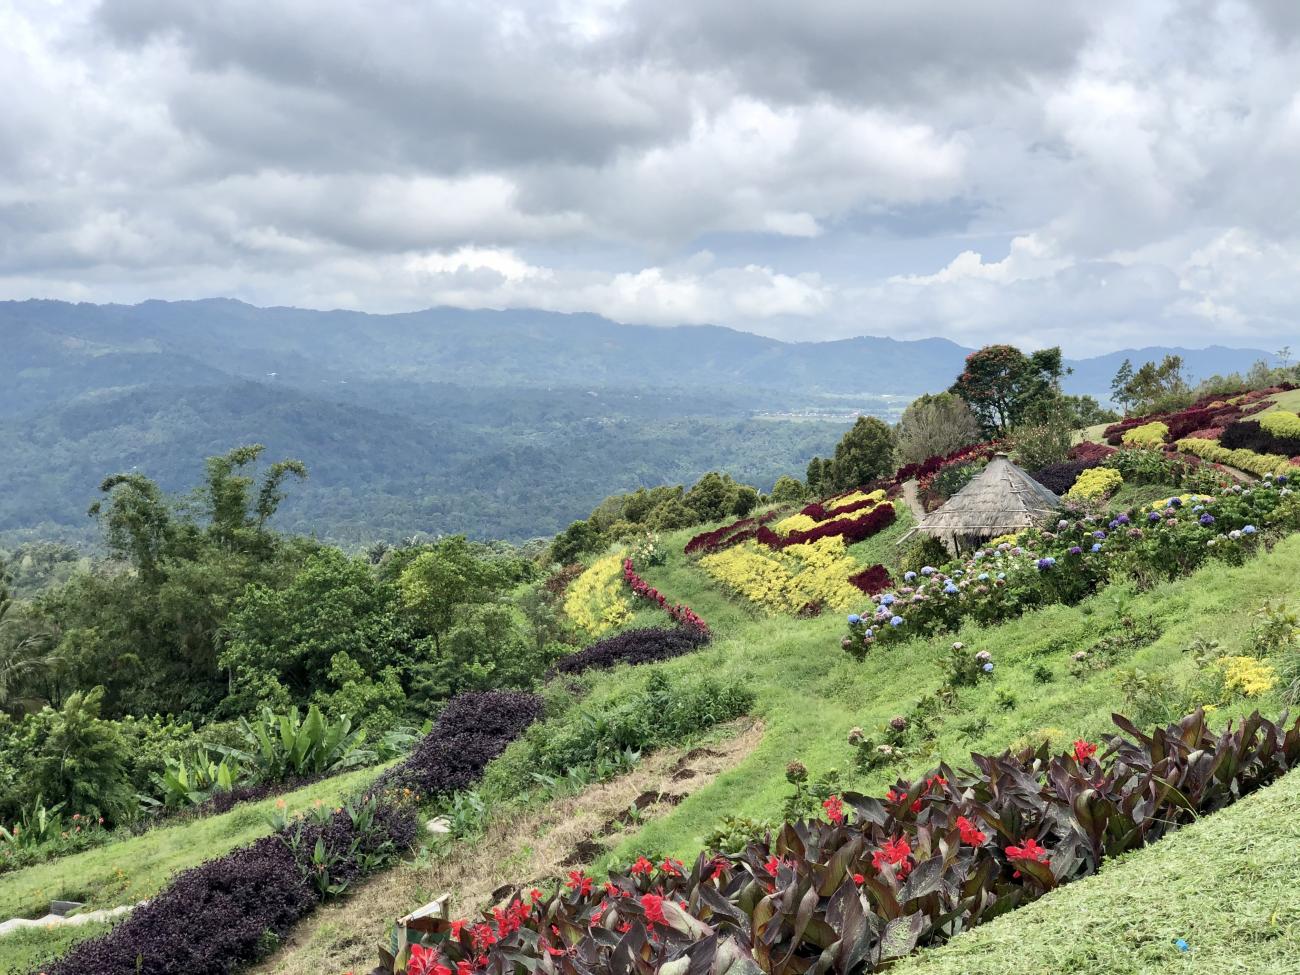 Pemandangan cantik di Tomohon, Sulawesi Utara, Indonesia menunjukan bukit hijau yang subur dengan pepohonan dan berbagai macam bunga.